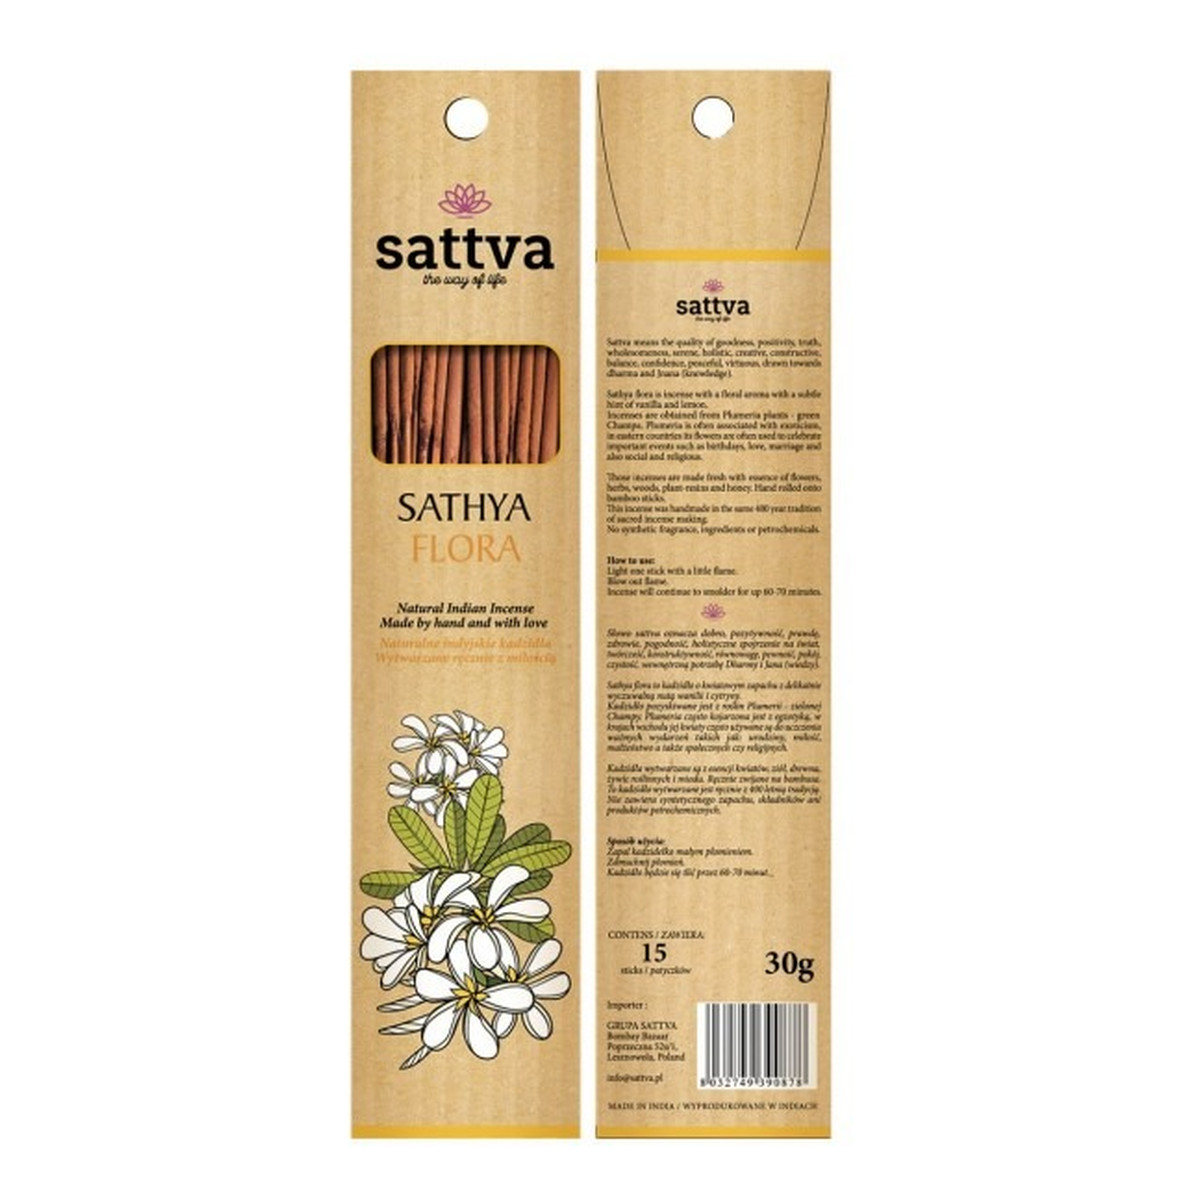 Sattva Naturalne Indyjskie Kadzidła Wytwarzane Ręcznie Z Miłością Flora 15szt 30g